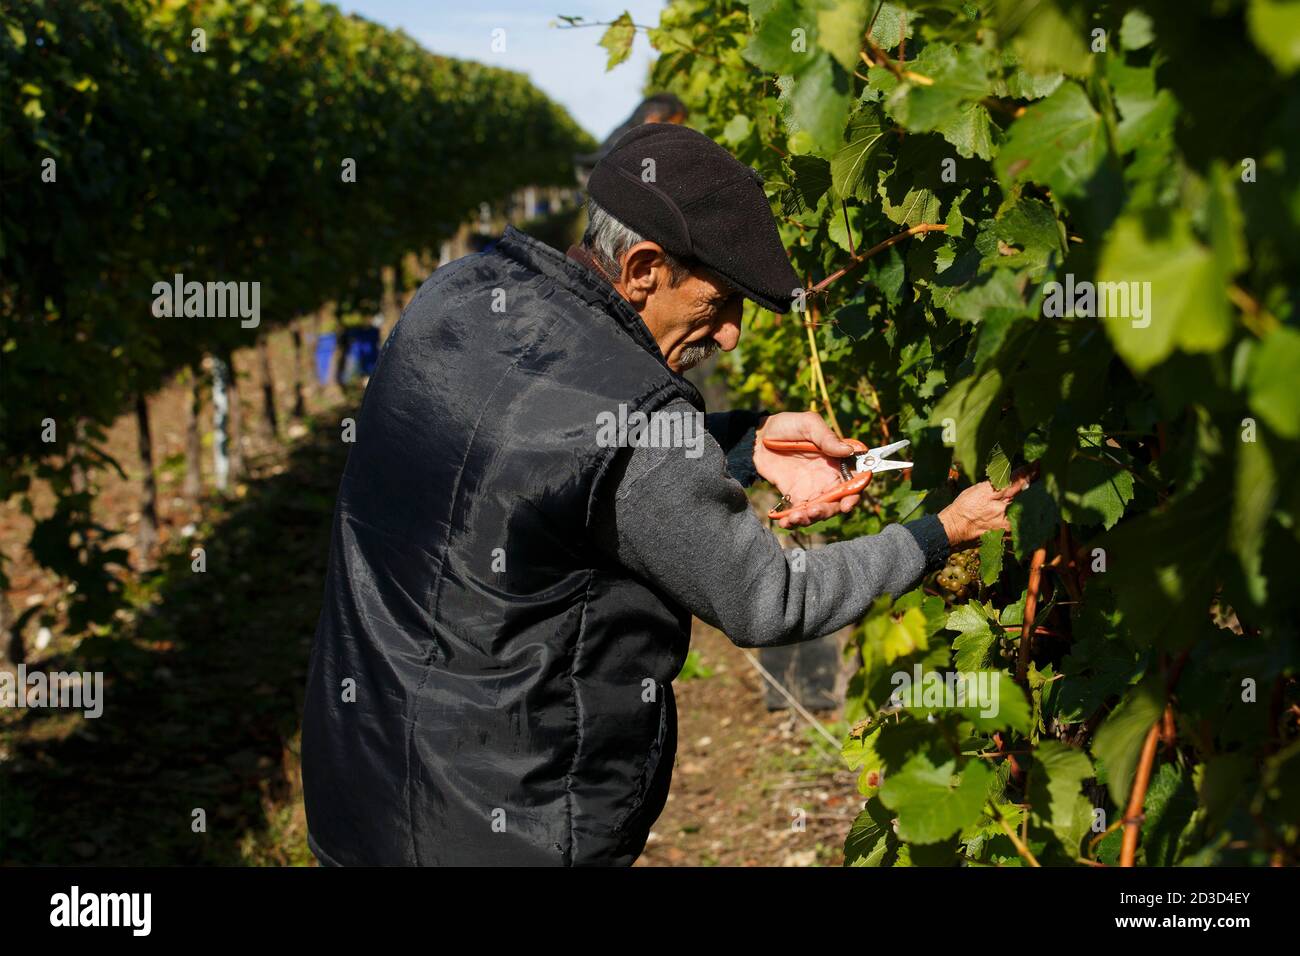 Récolte de raisins Chardonnay au vignoble et domaine de Hambledon, Hampshire, Royaume-Uni le mercredi 7 octobre 2020. Hambledon a 100,00 vignes établies situé o Banque D'Images